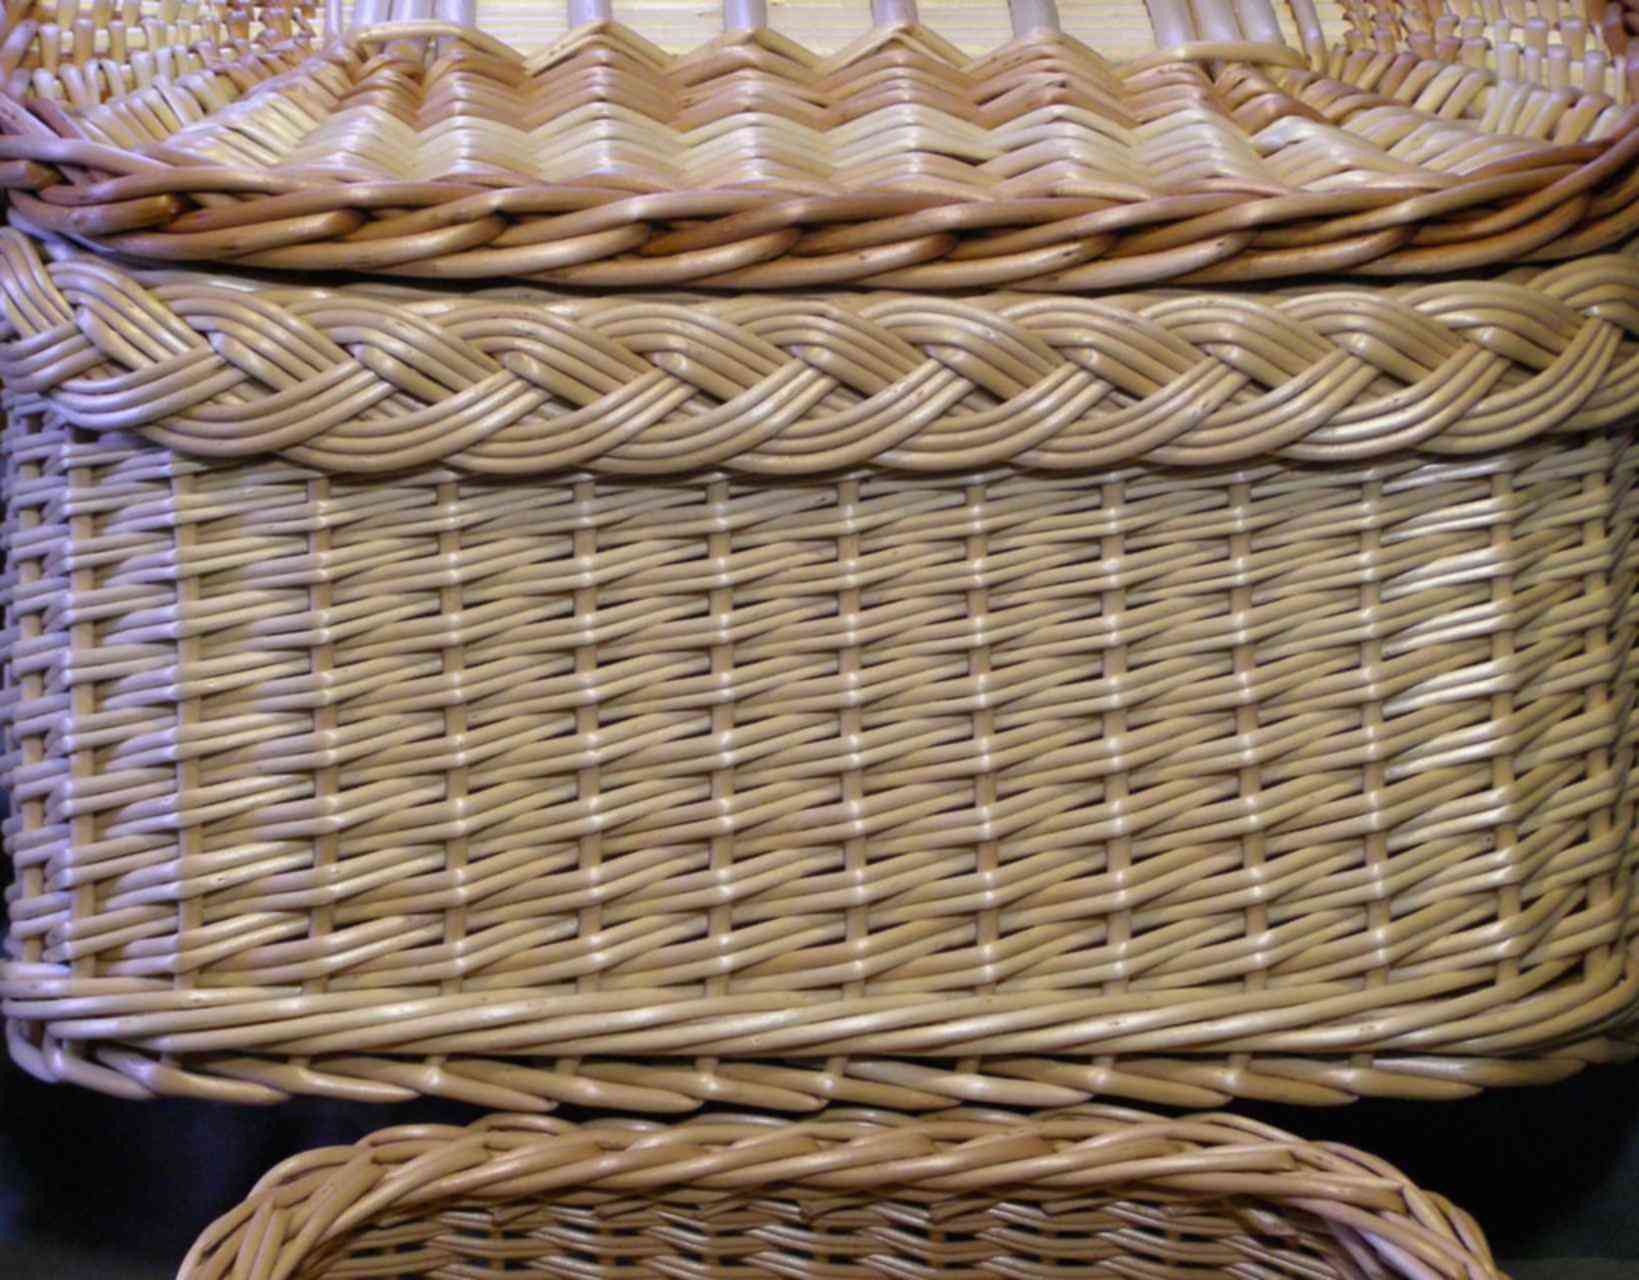 Плетение корзин из ивы пошагово своими руками: учимся плести корзины в домашних условиях. мастер-класс с фото для начинающих